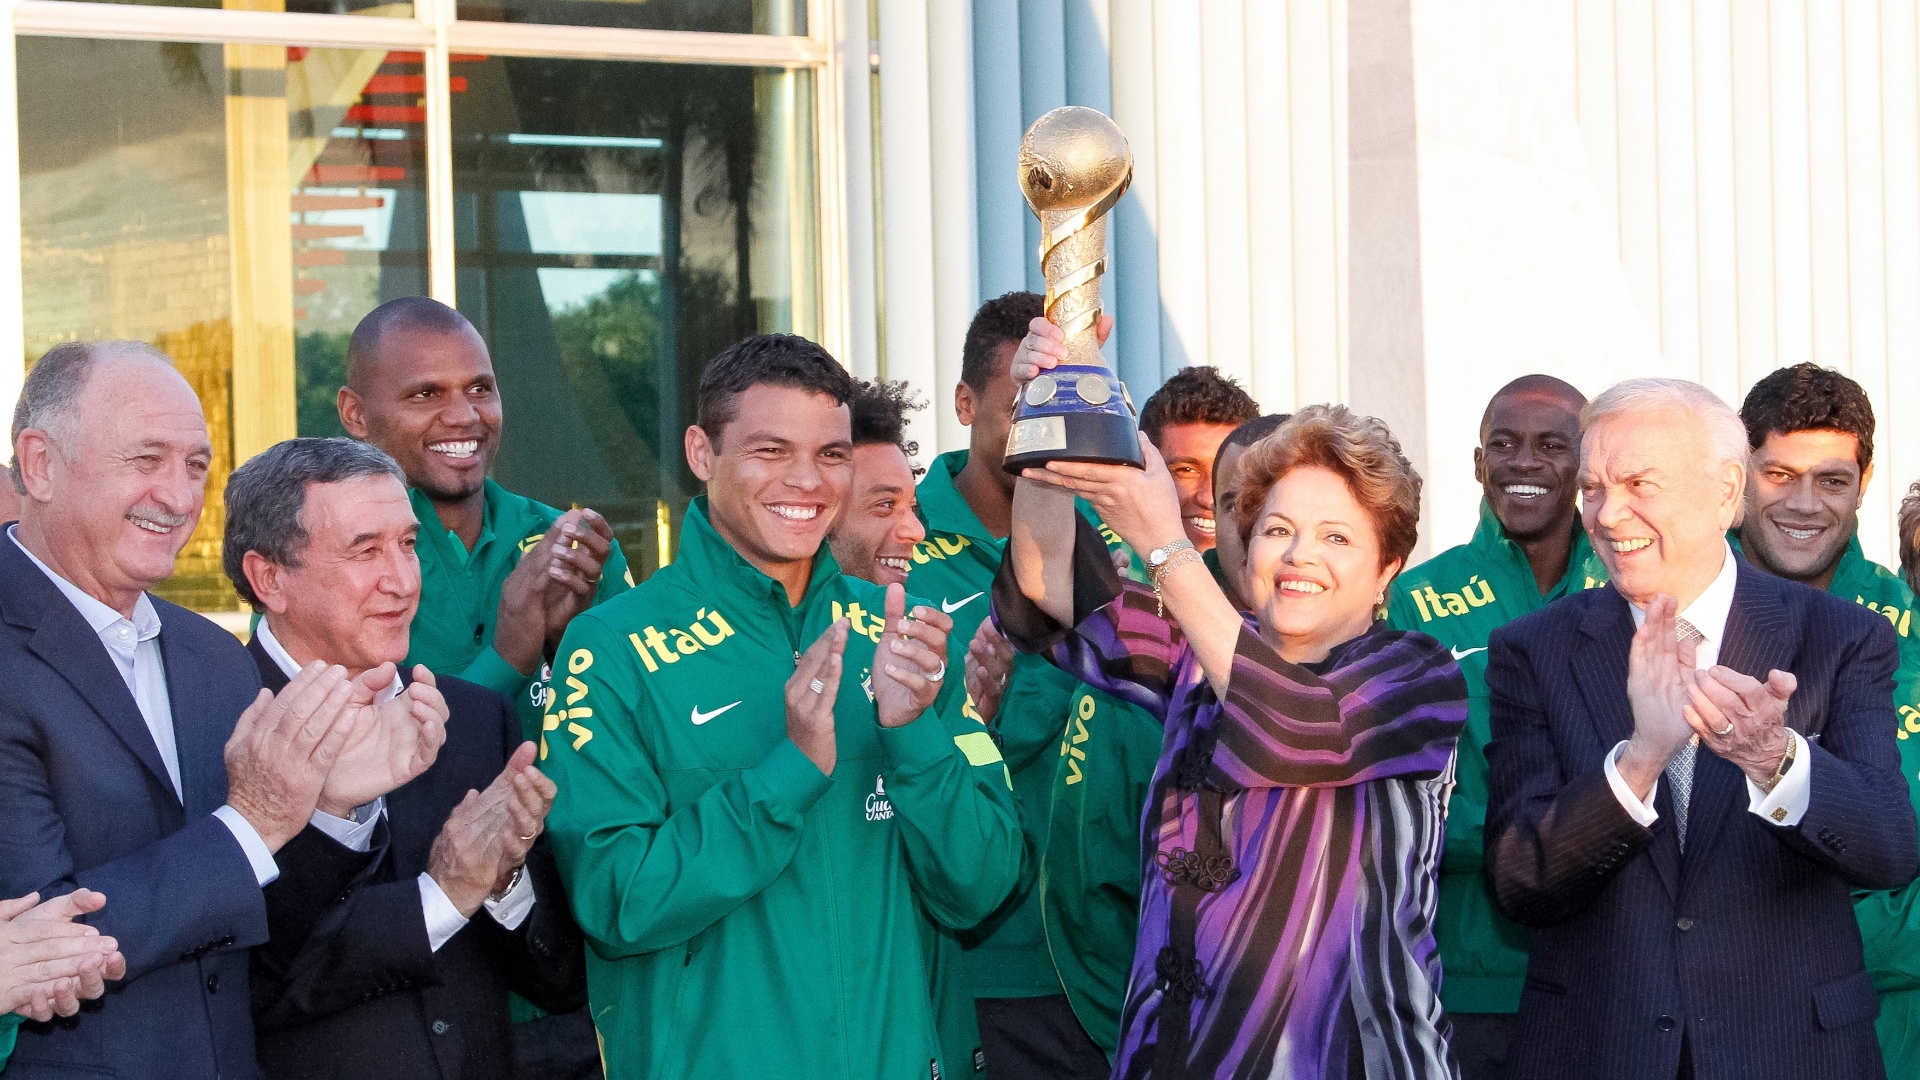 02.09.2013 - Após o anúncio do patrocinador, a seleção brasileira participou de um encontro com a presidente Dilma Rousseff, que ergueu a taça da Copa das Confederações